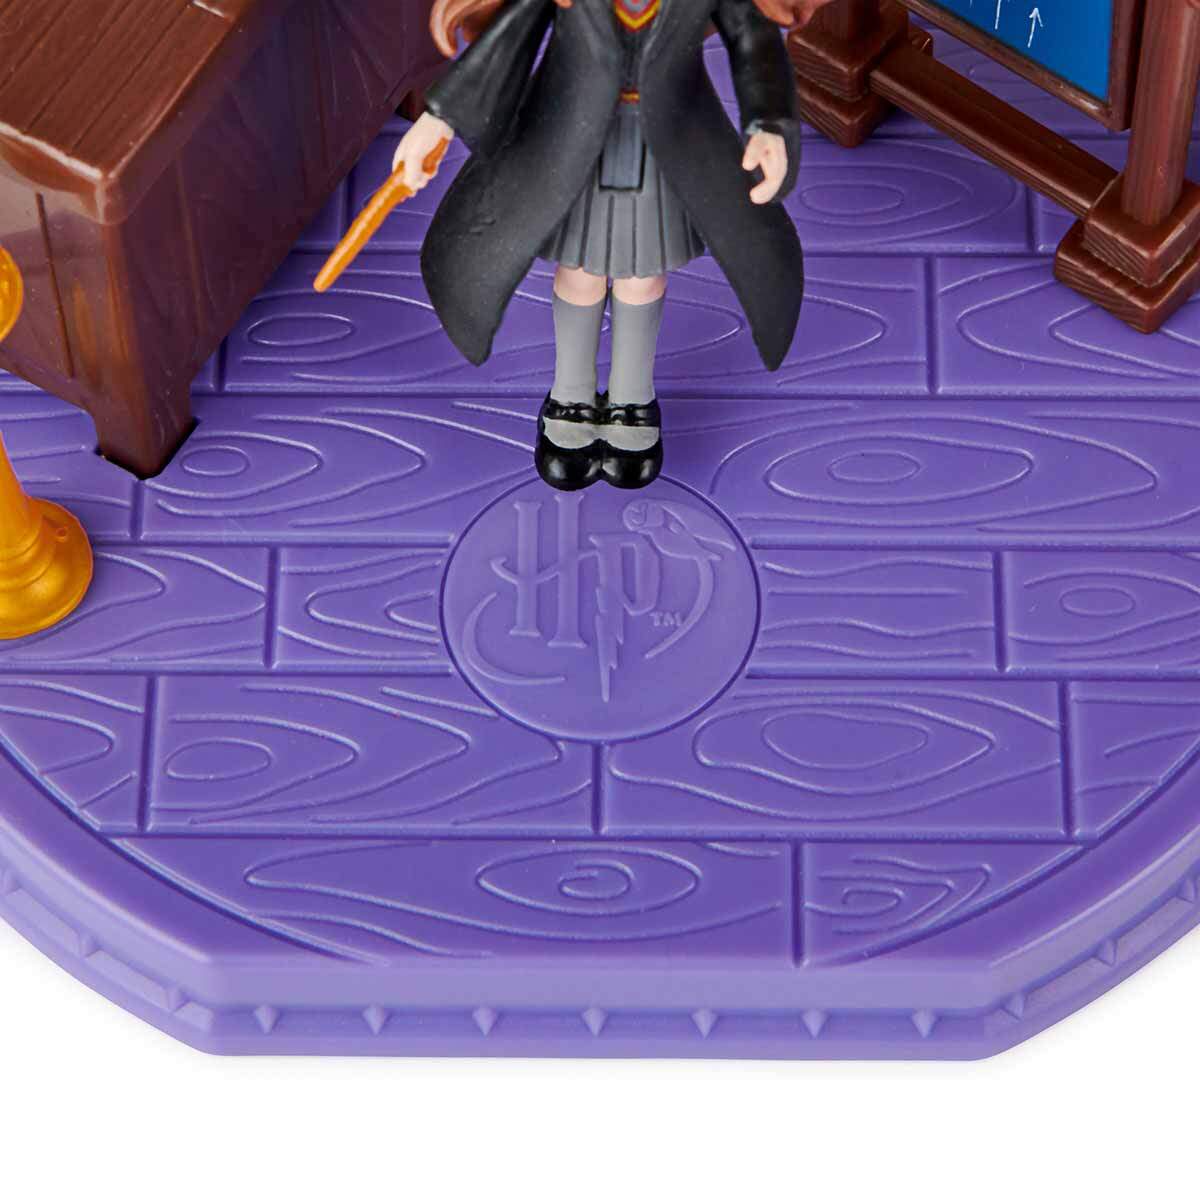 8a581 Harry Potter Magical Minis Tilsim Sinifi Sihir Dükkanı - Tüm Harry Potter Ürünleri